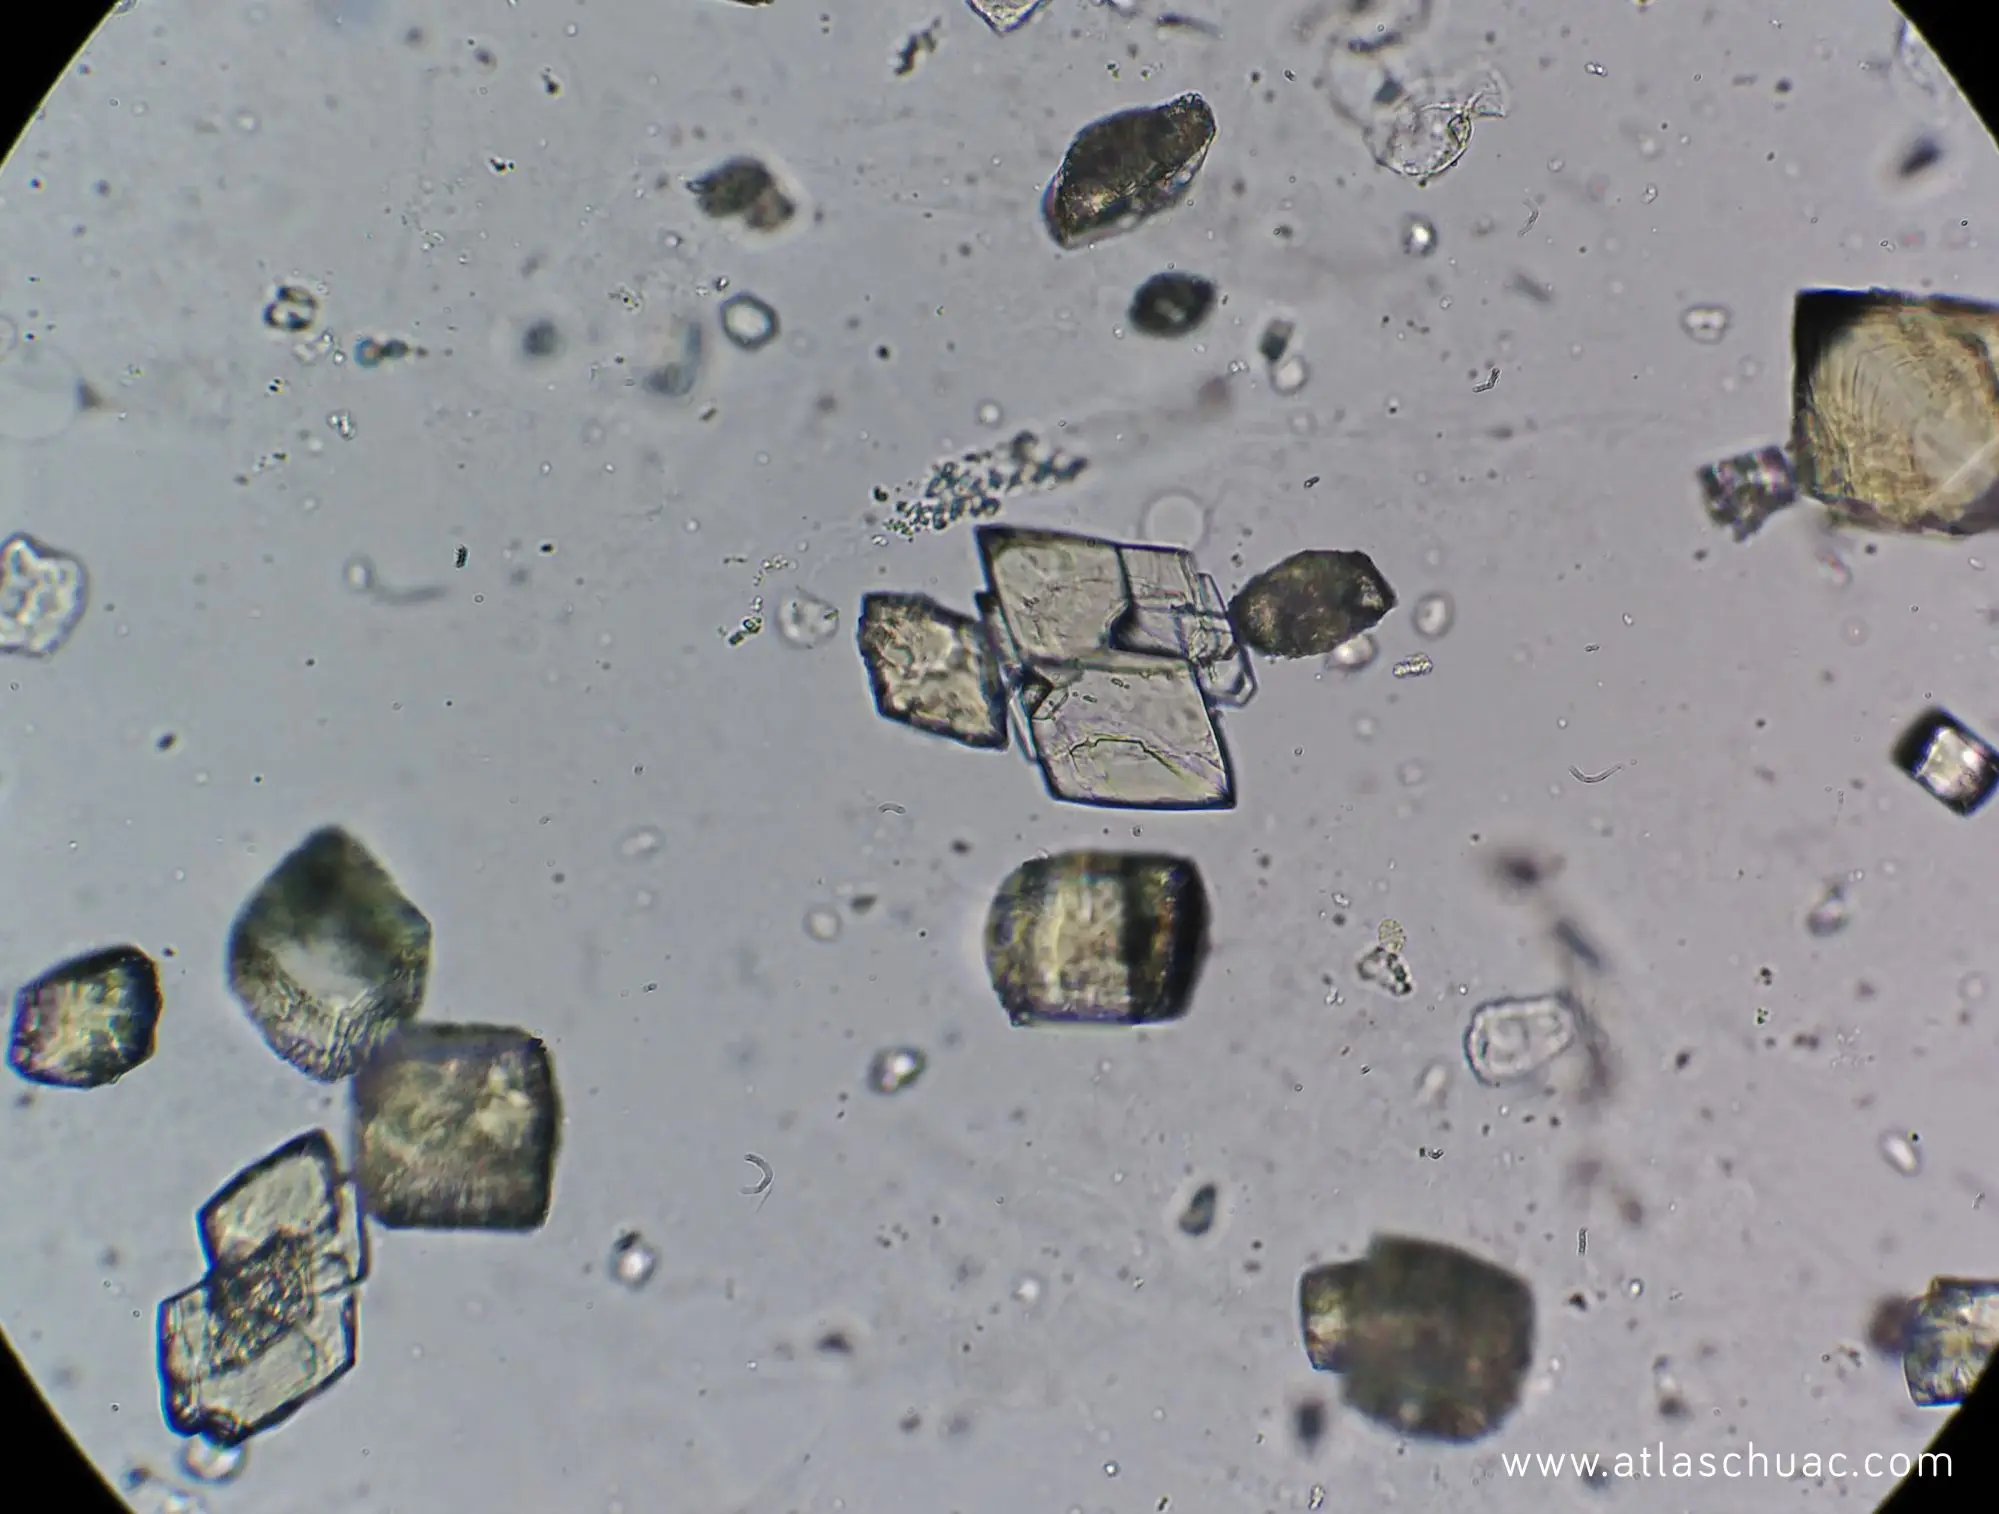 cristales de acido urico en sedimento urinario - Cómo se forman los cristales de ácido úrico